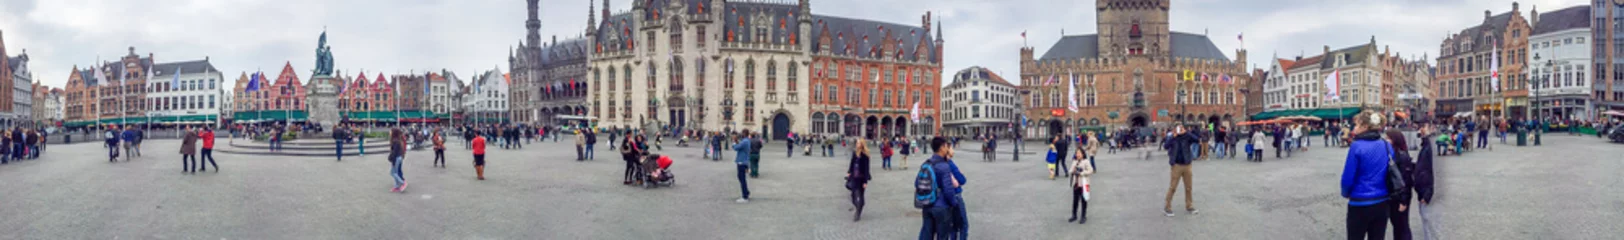 Behangcirkel BRUGGE, BELGI - MEI 2015: Toeristen langs stadsstraten. De stad is een beroemde attractie in België © jovannig